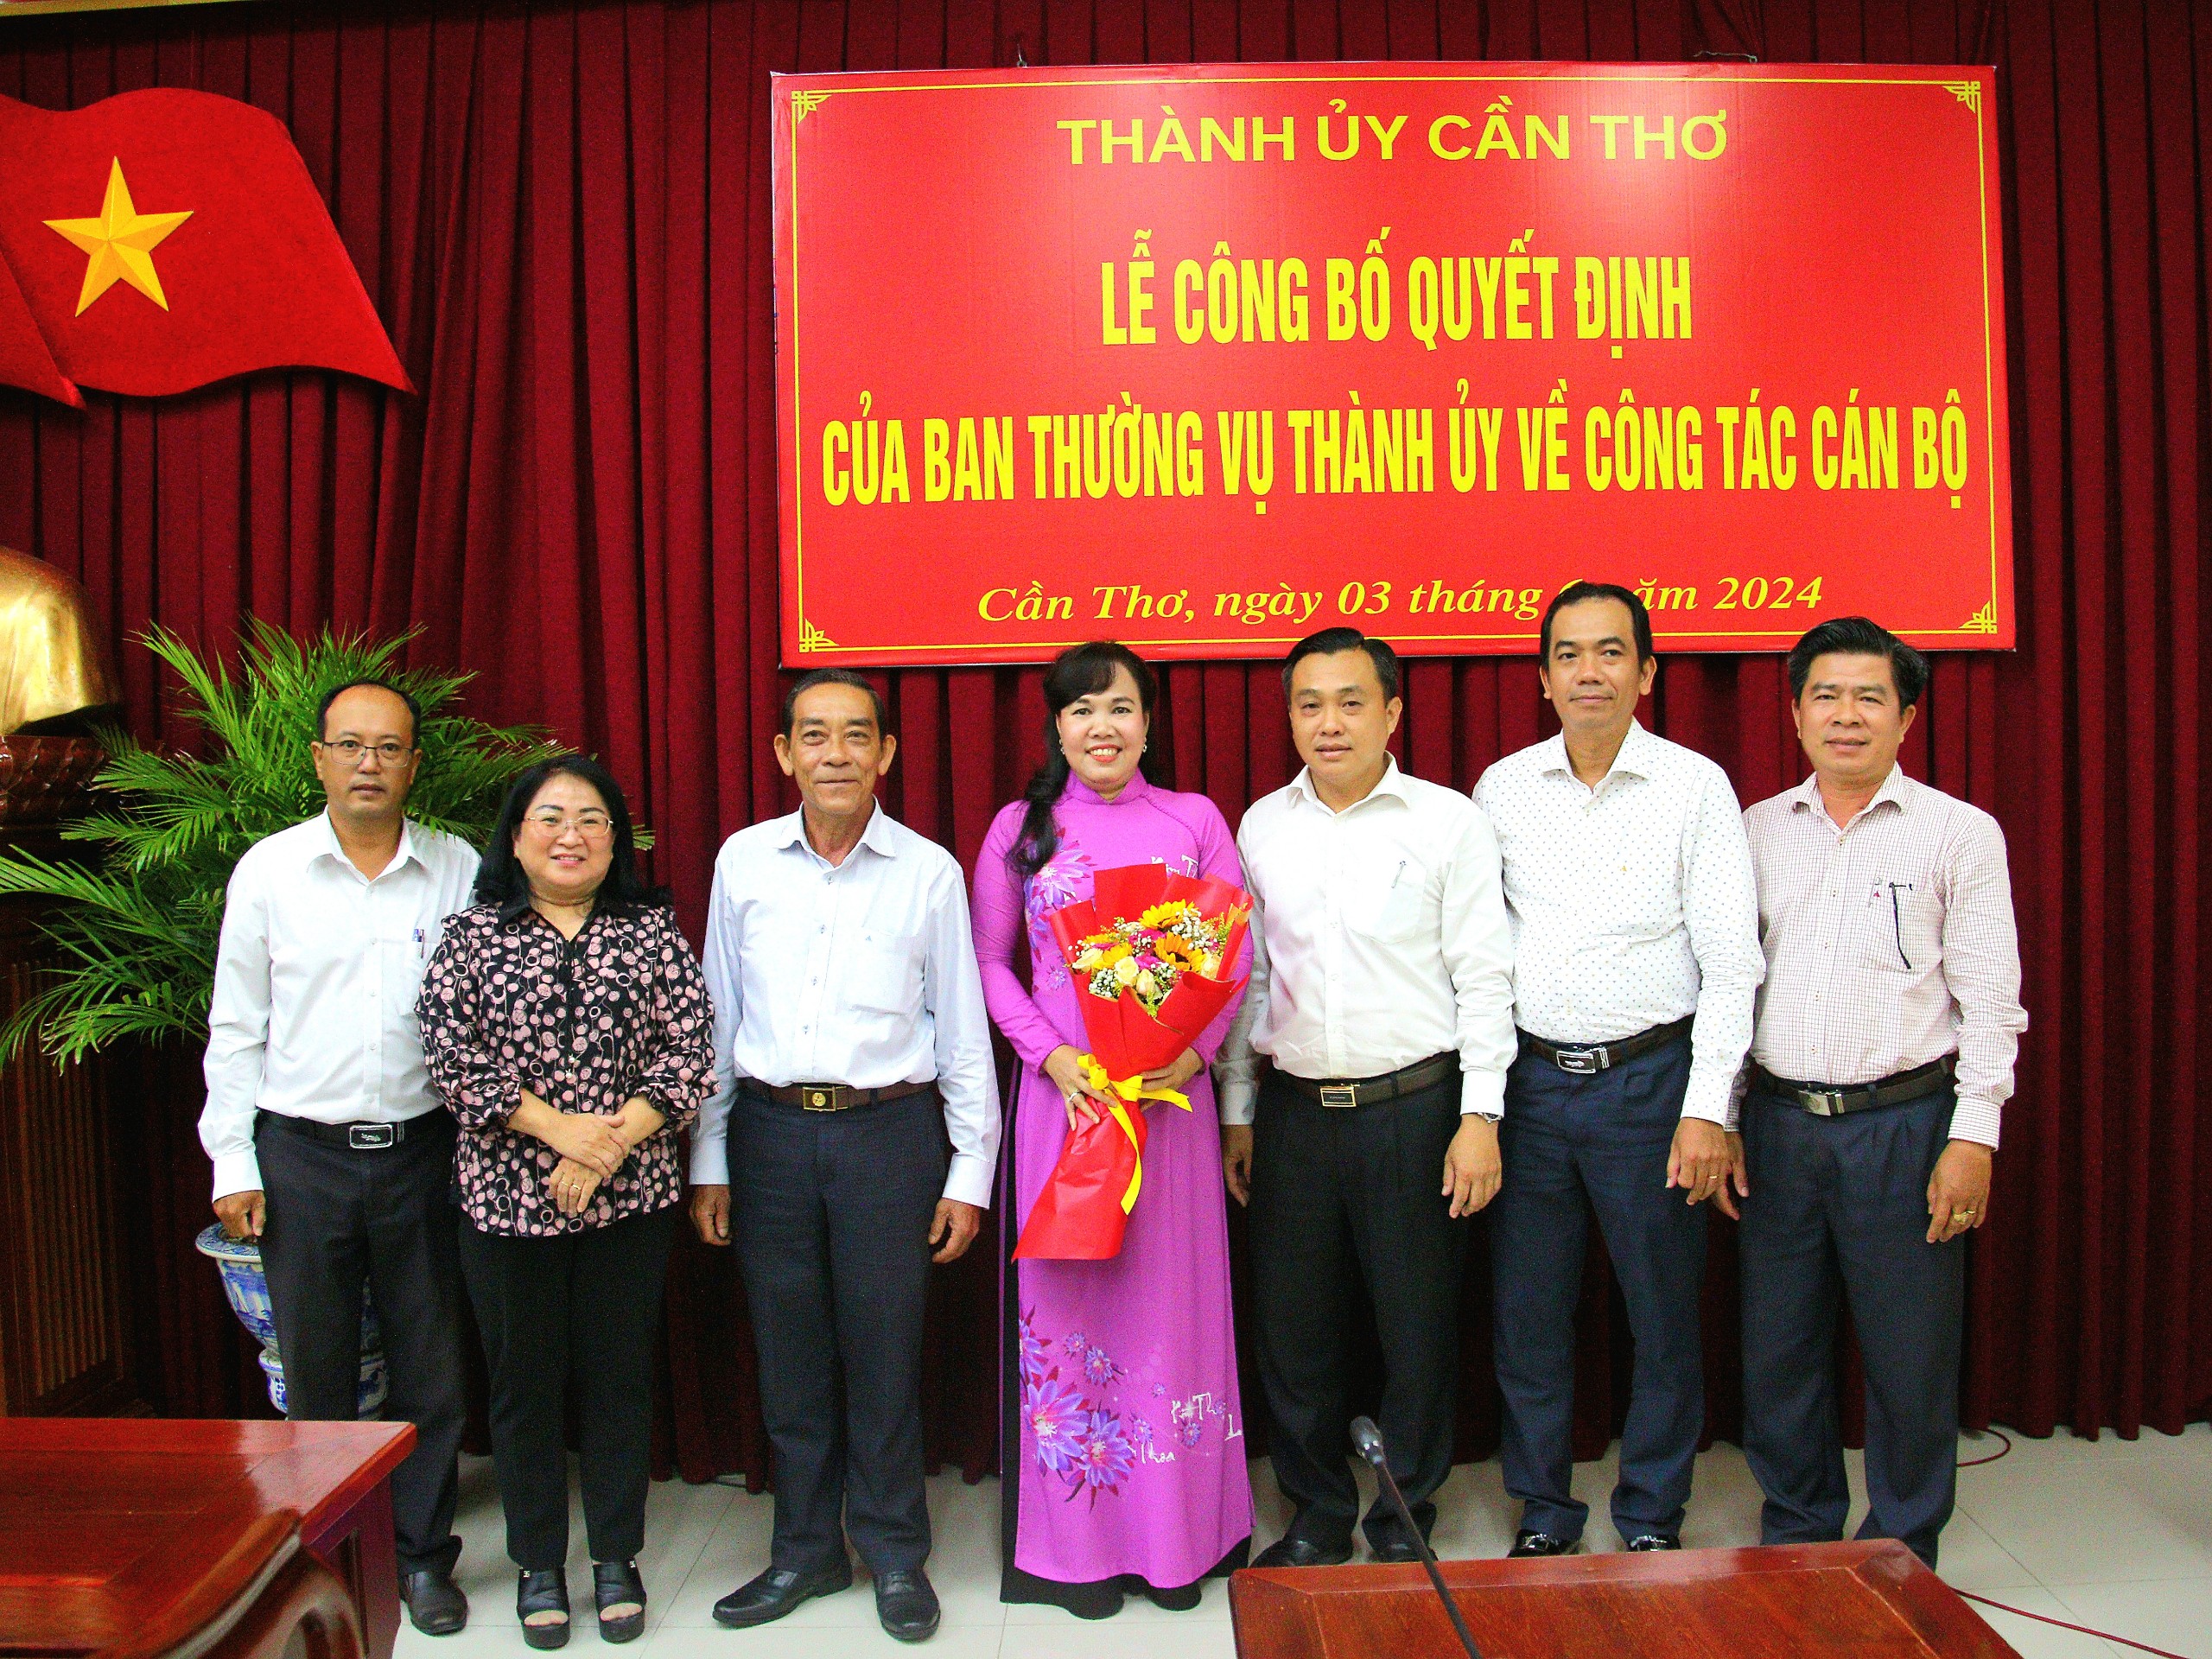 Tập thể Ban Dân vận Thành ủy Cần Thơ chụp hình lưu niệm cùng bà Võ Kim Thoa - Trưởng Ban Dân vận Thành ủy Cần Thơ.